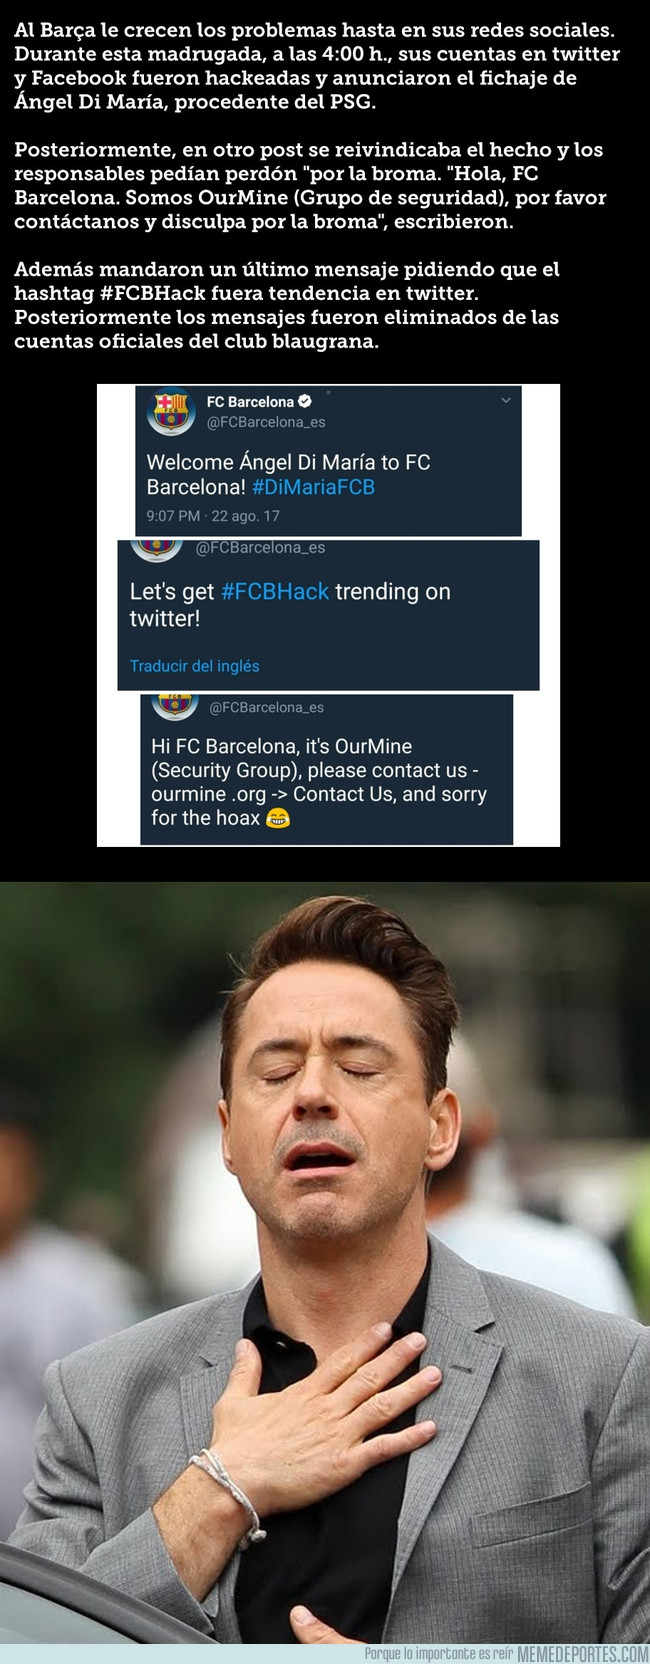 995056 - El Barça anuncia así a DiMaría en Twitter y cuando todo entran en llamas, ven que es un hackeo